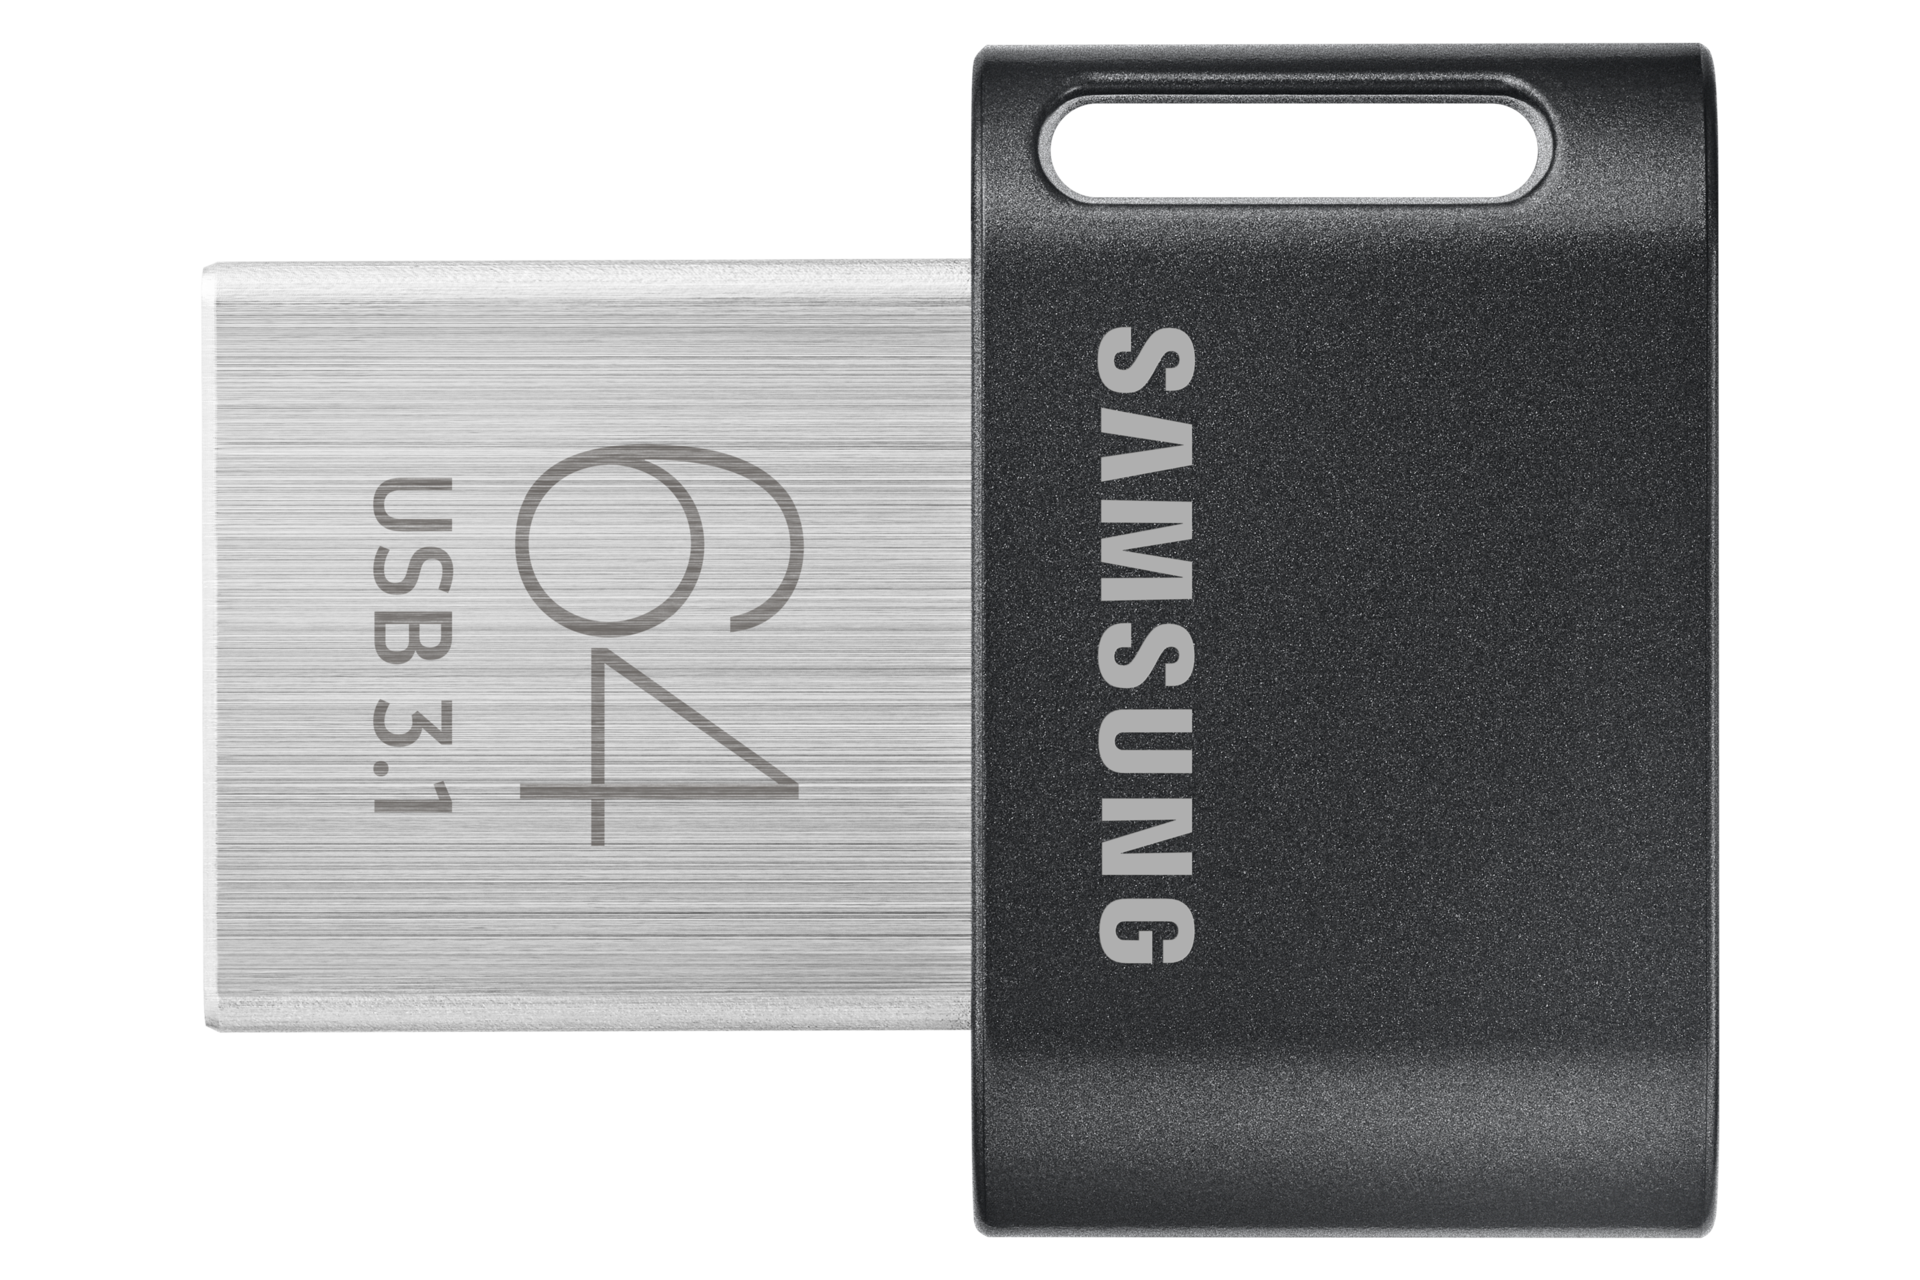 Clé USB 3.1 Fit Plus de 64 Go de Samsung